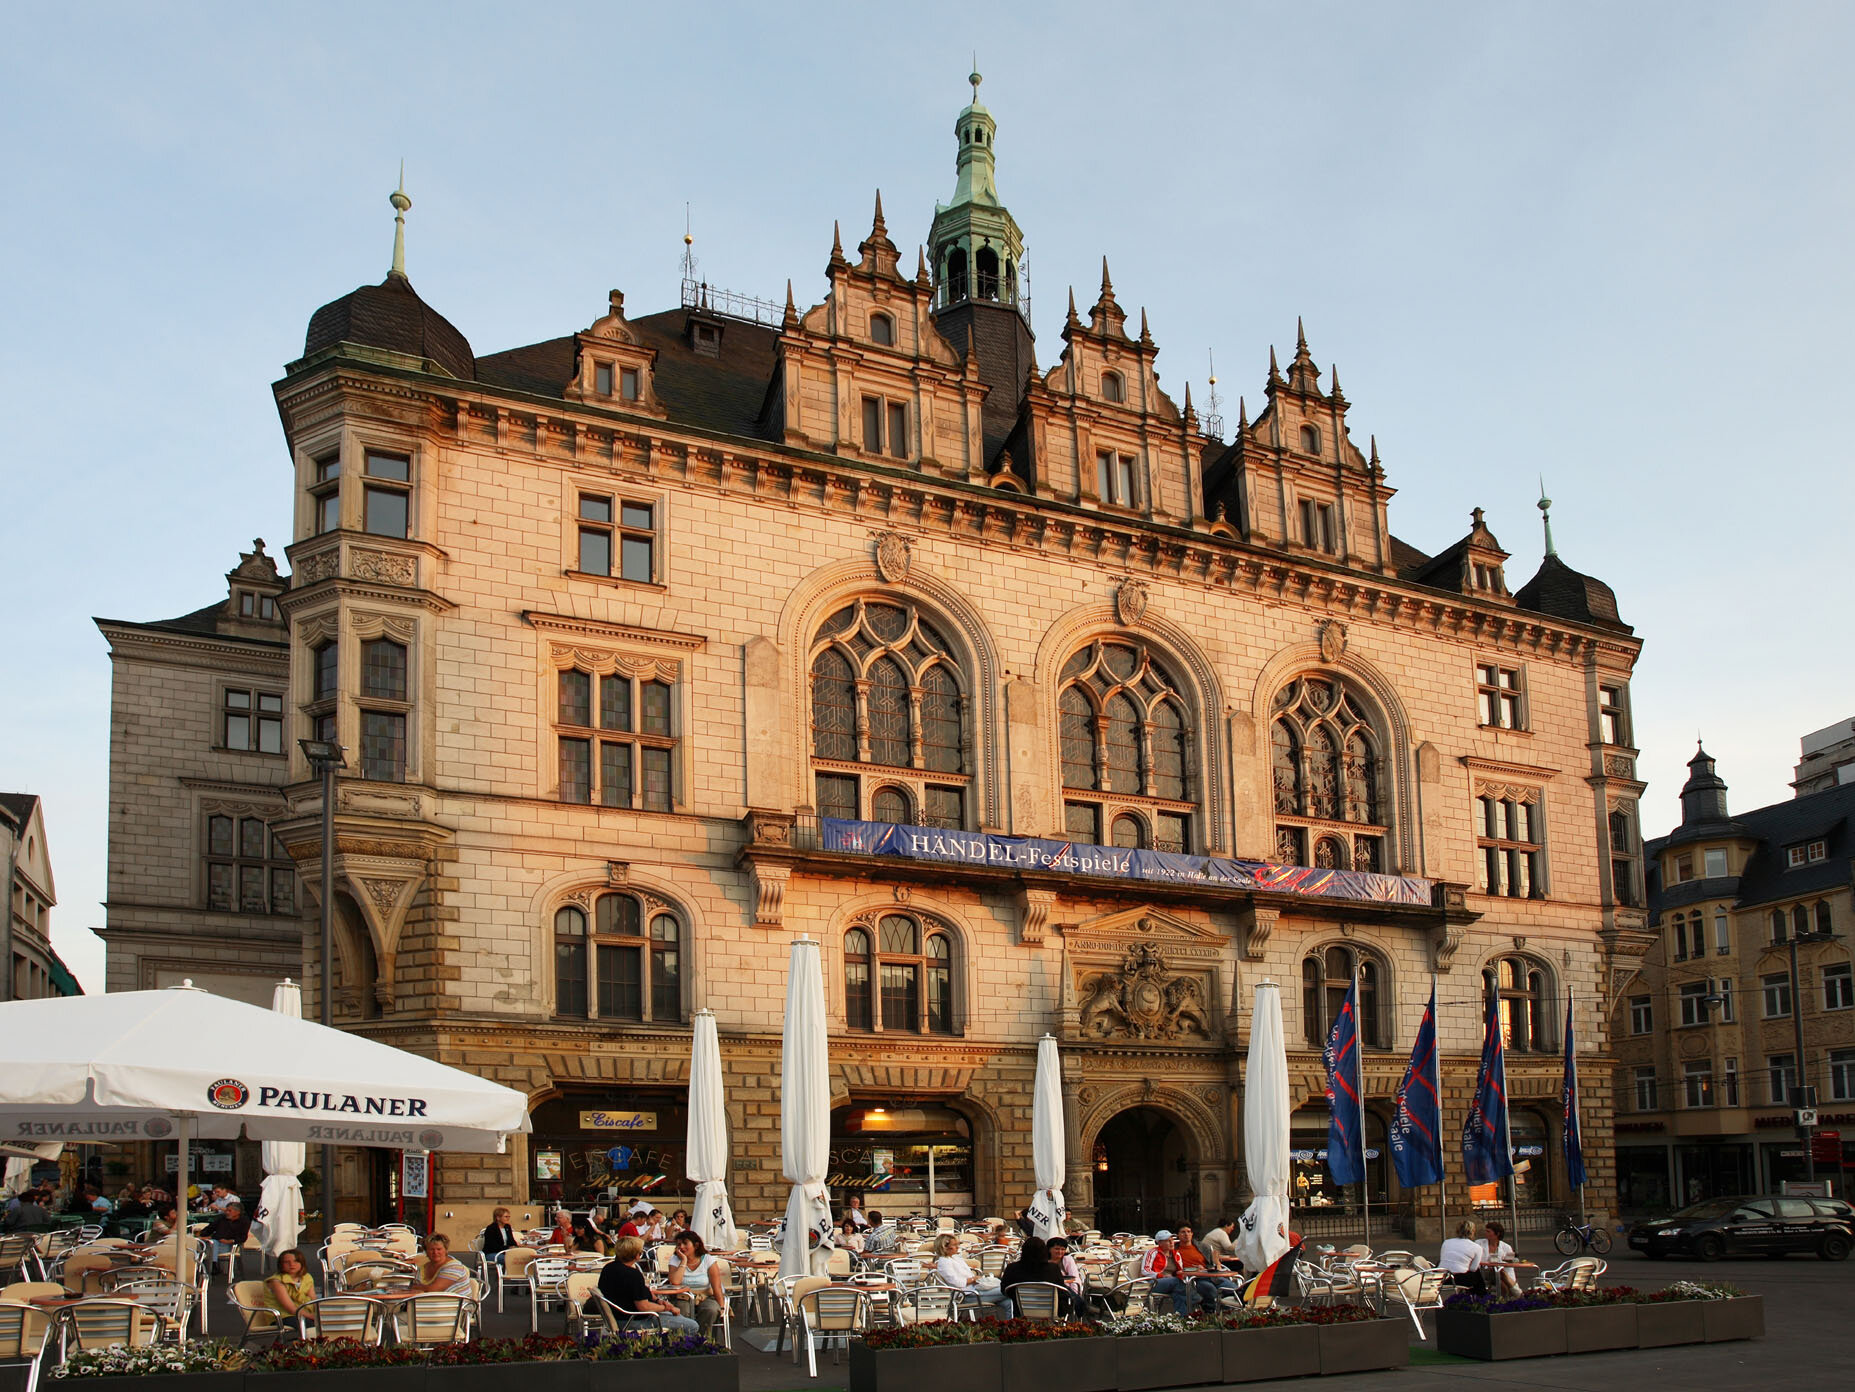 Das Stadthaus von Halle ist das neugotische Versammlungs-, Sitzungs- und Festgebäude auf dem Marktplatz der Stadt Halle (Saale) und ein unter Denkmalschutz stehendes Wahrzeichen der Stadt. 